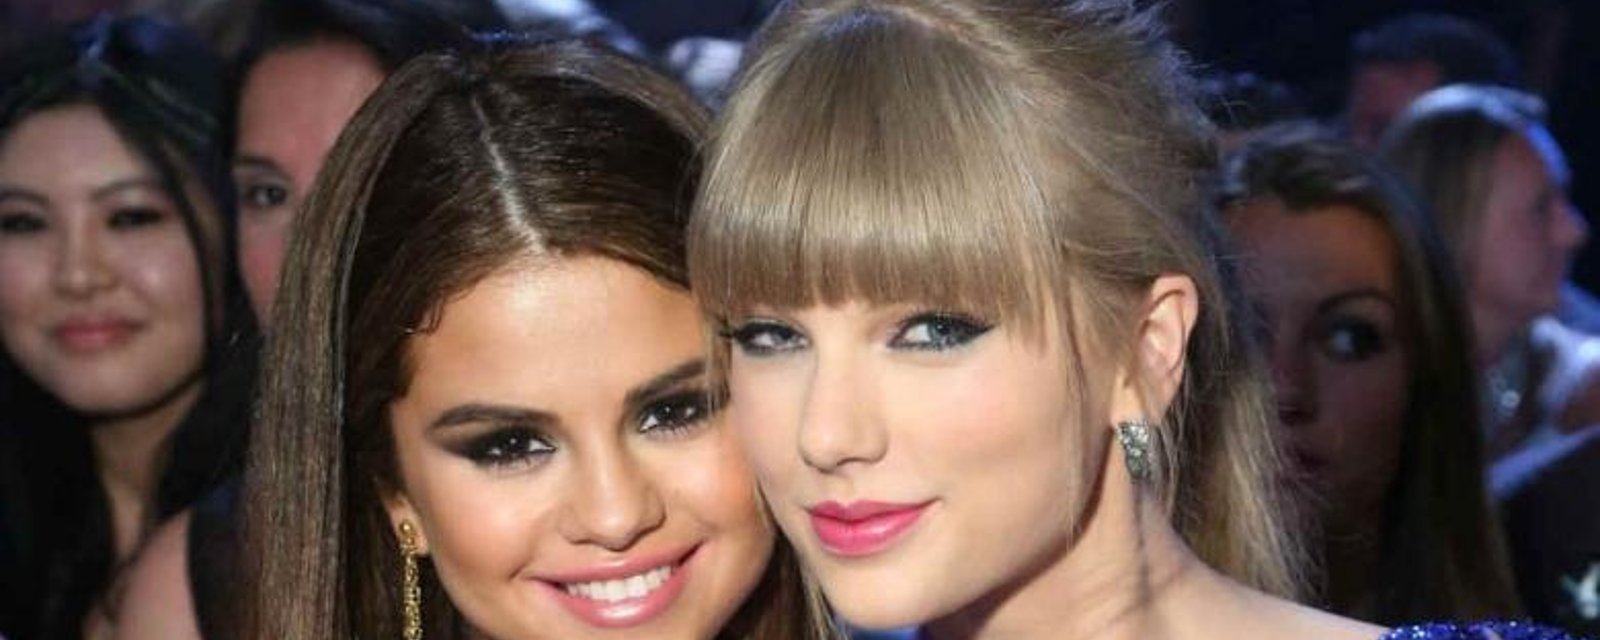 Les robes de Taylor Swift et Selena Gomez ont volé la vedette sur le tapis rouge des Grammys